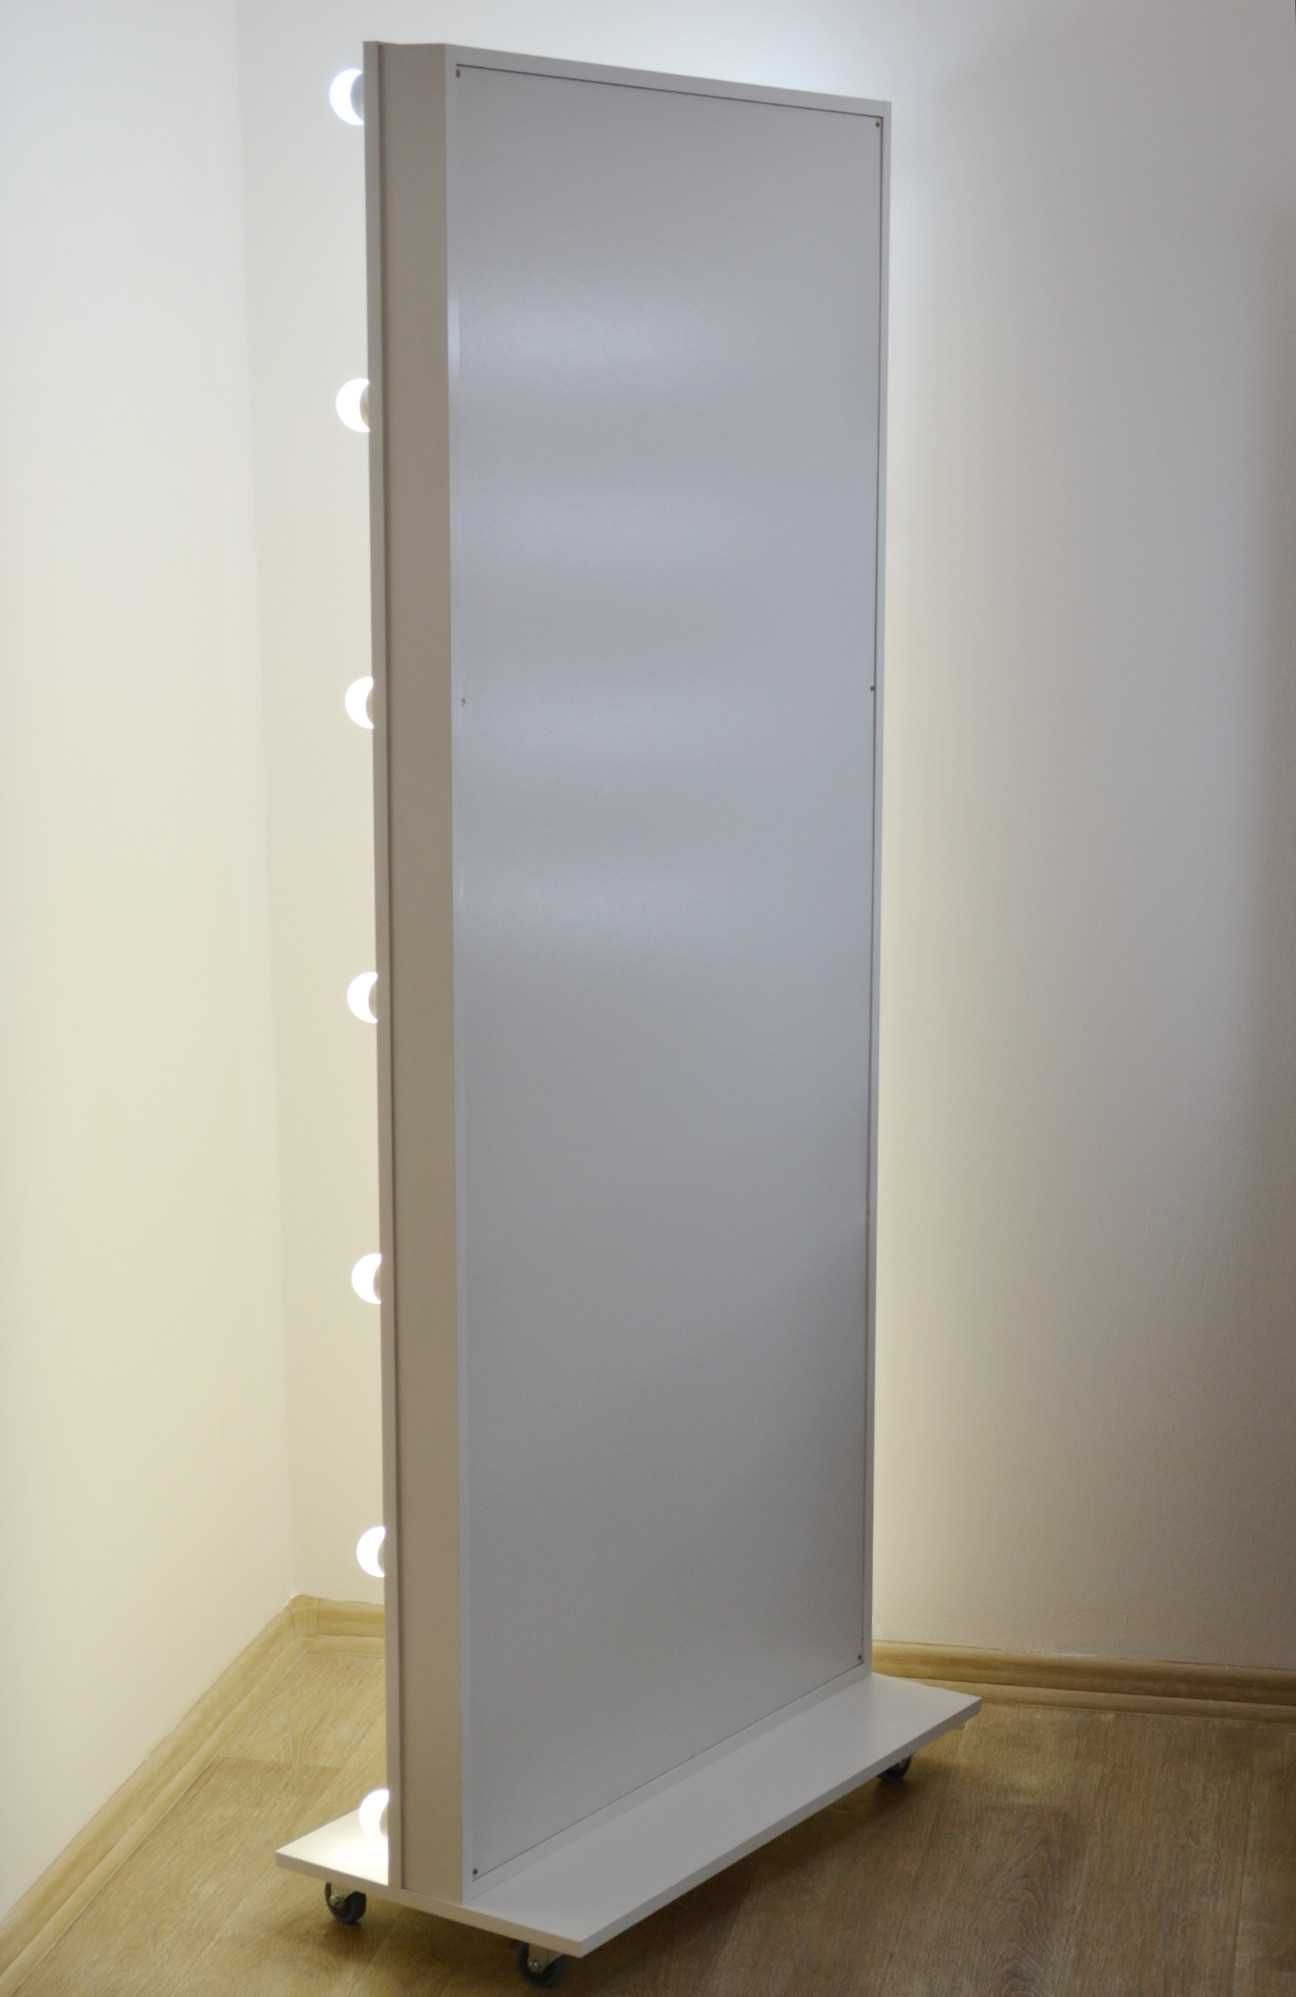 Ростовое макияжное гримерное зеркало с подсветкой на колесиках